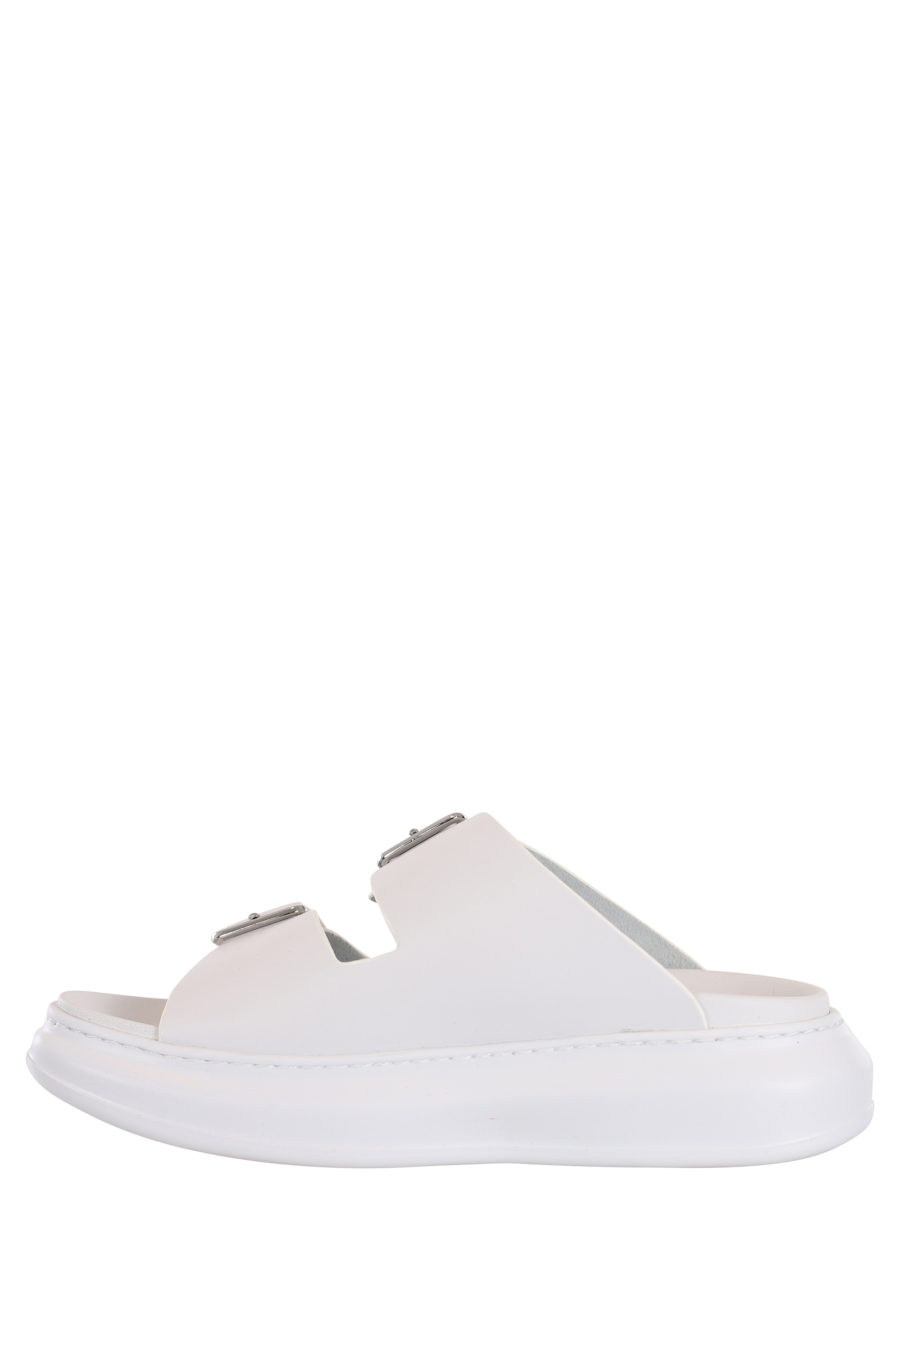 Sandalias blancas con hebillas y logo negro en el lateral - IMG 0036